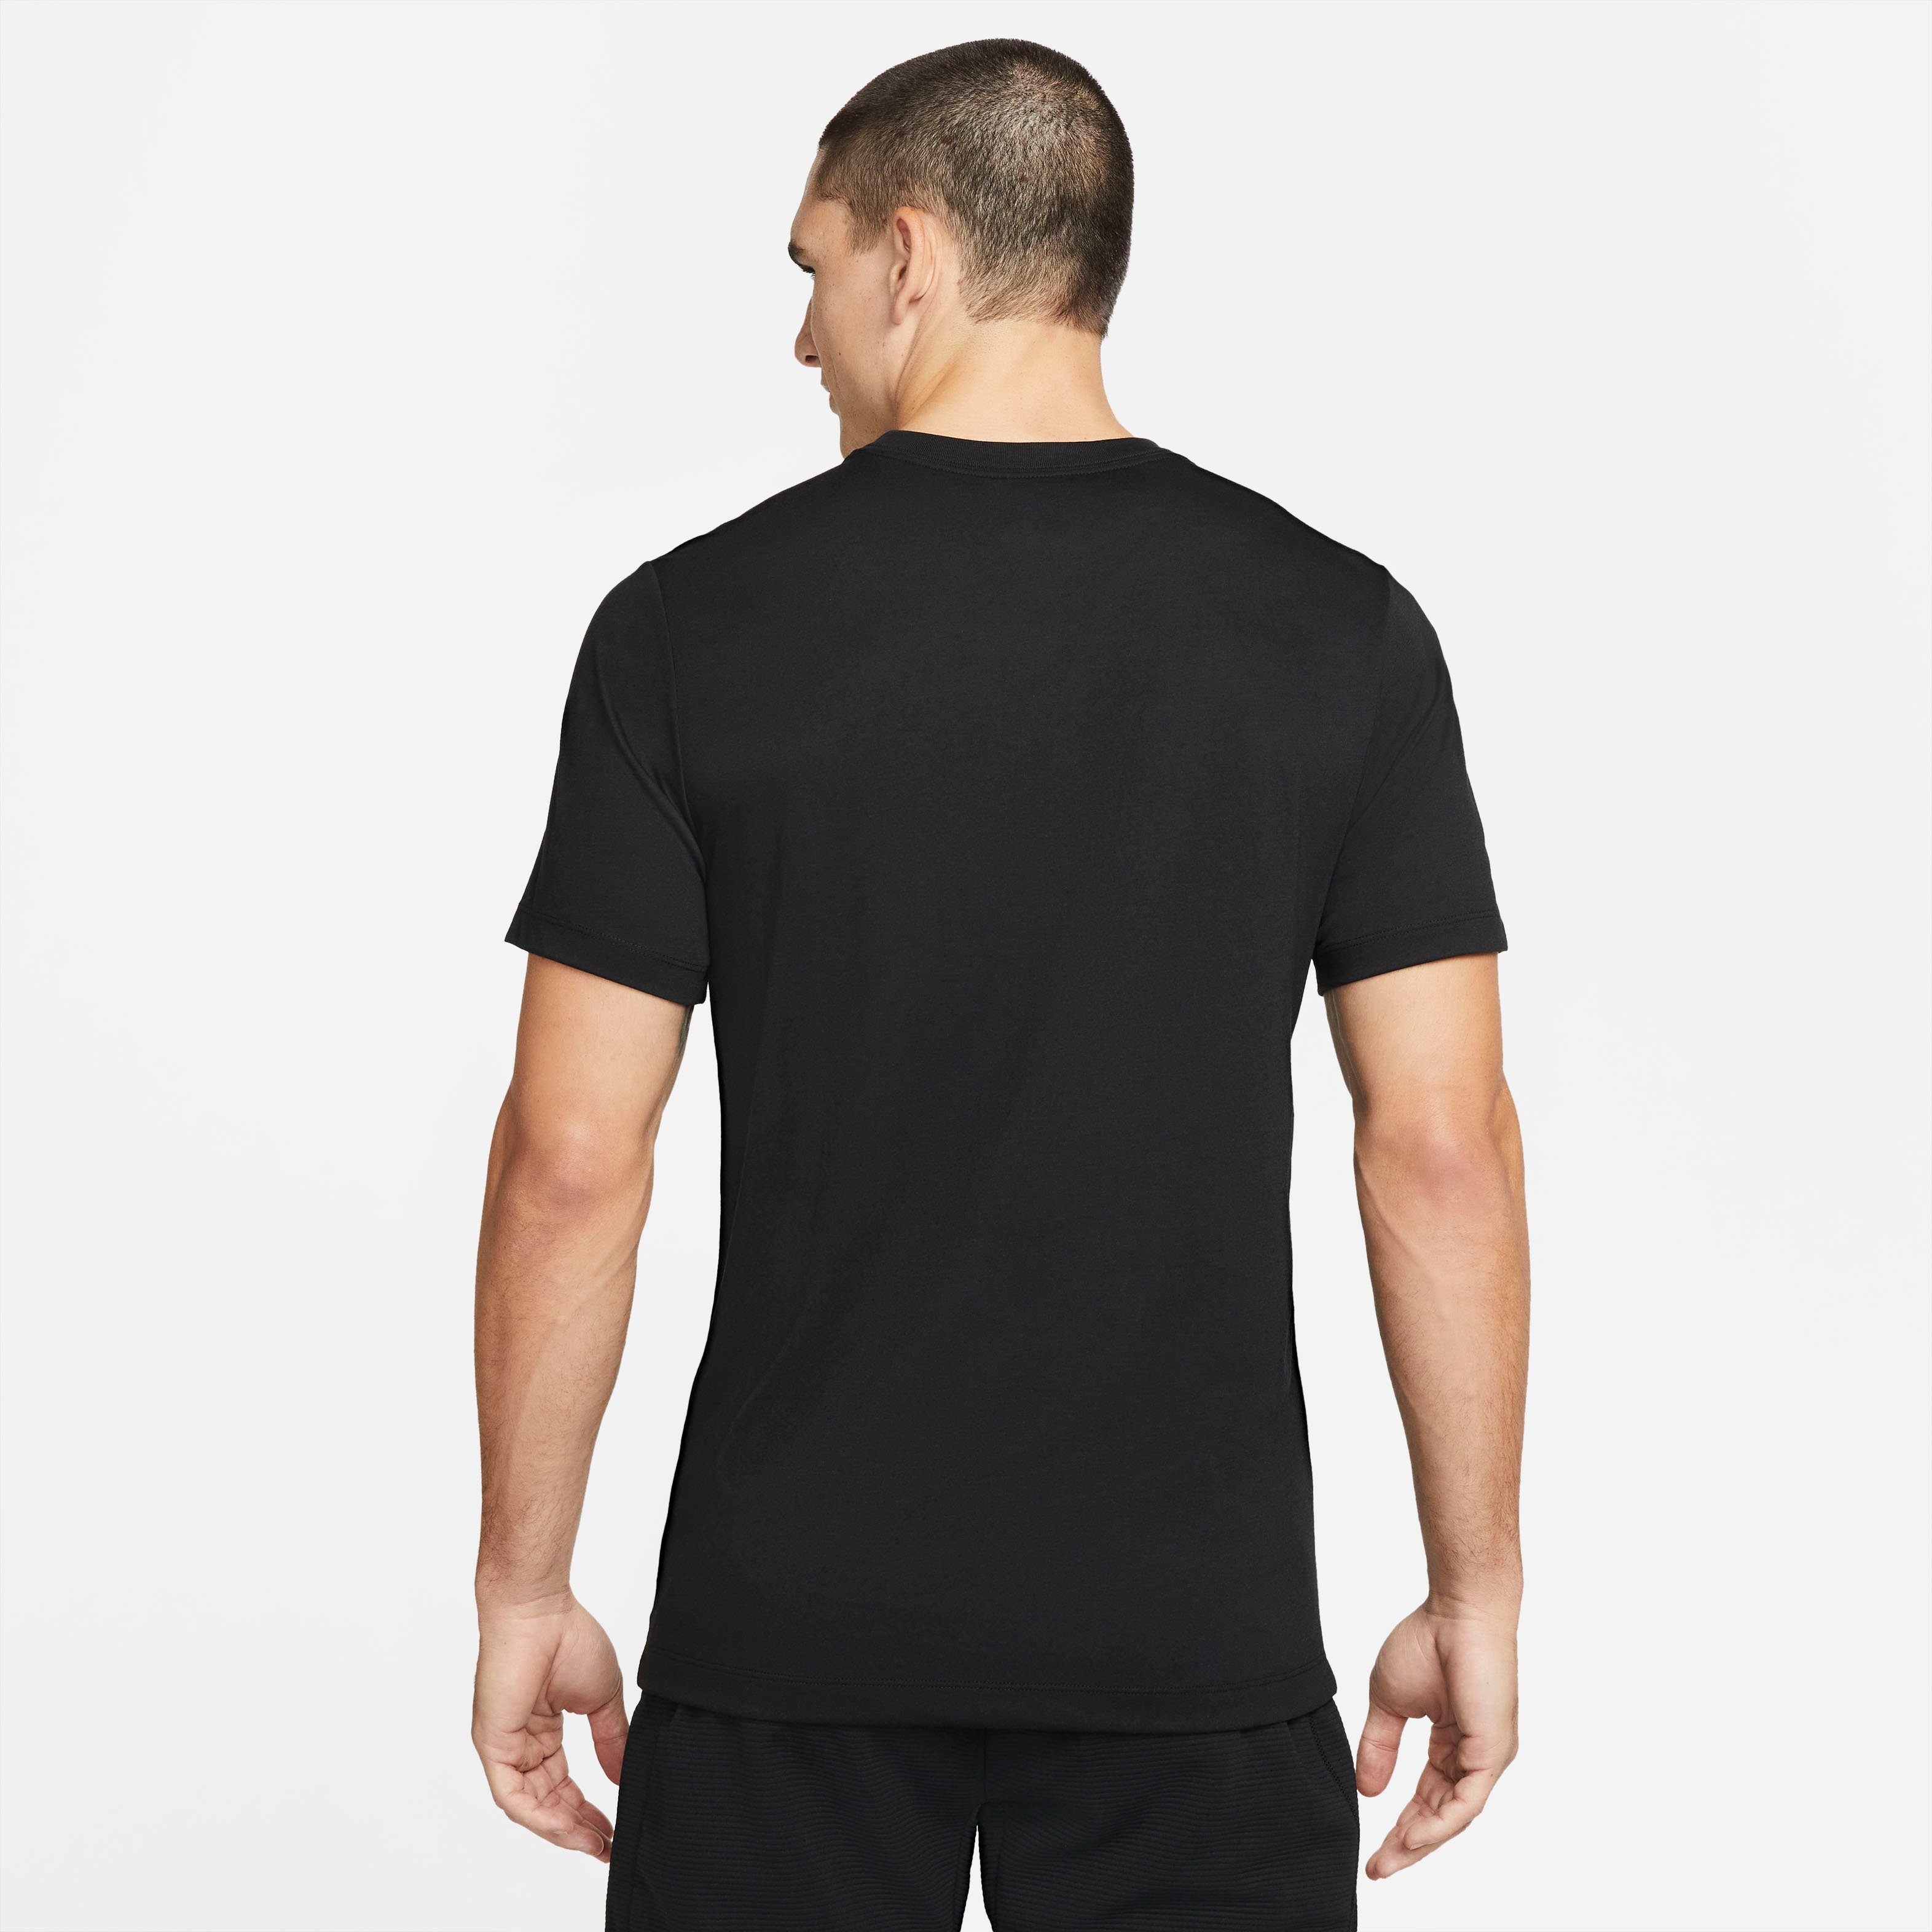 Nike Trainingsshirt Dri-FIT BLACK Men's Training Pro T-Shirt